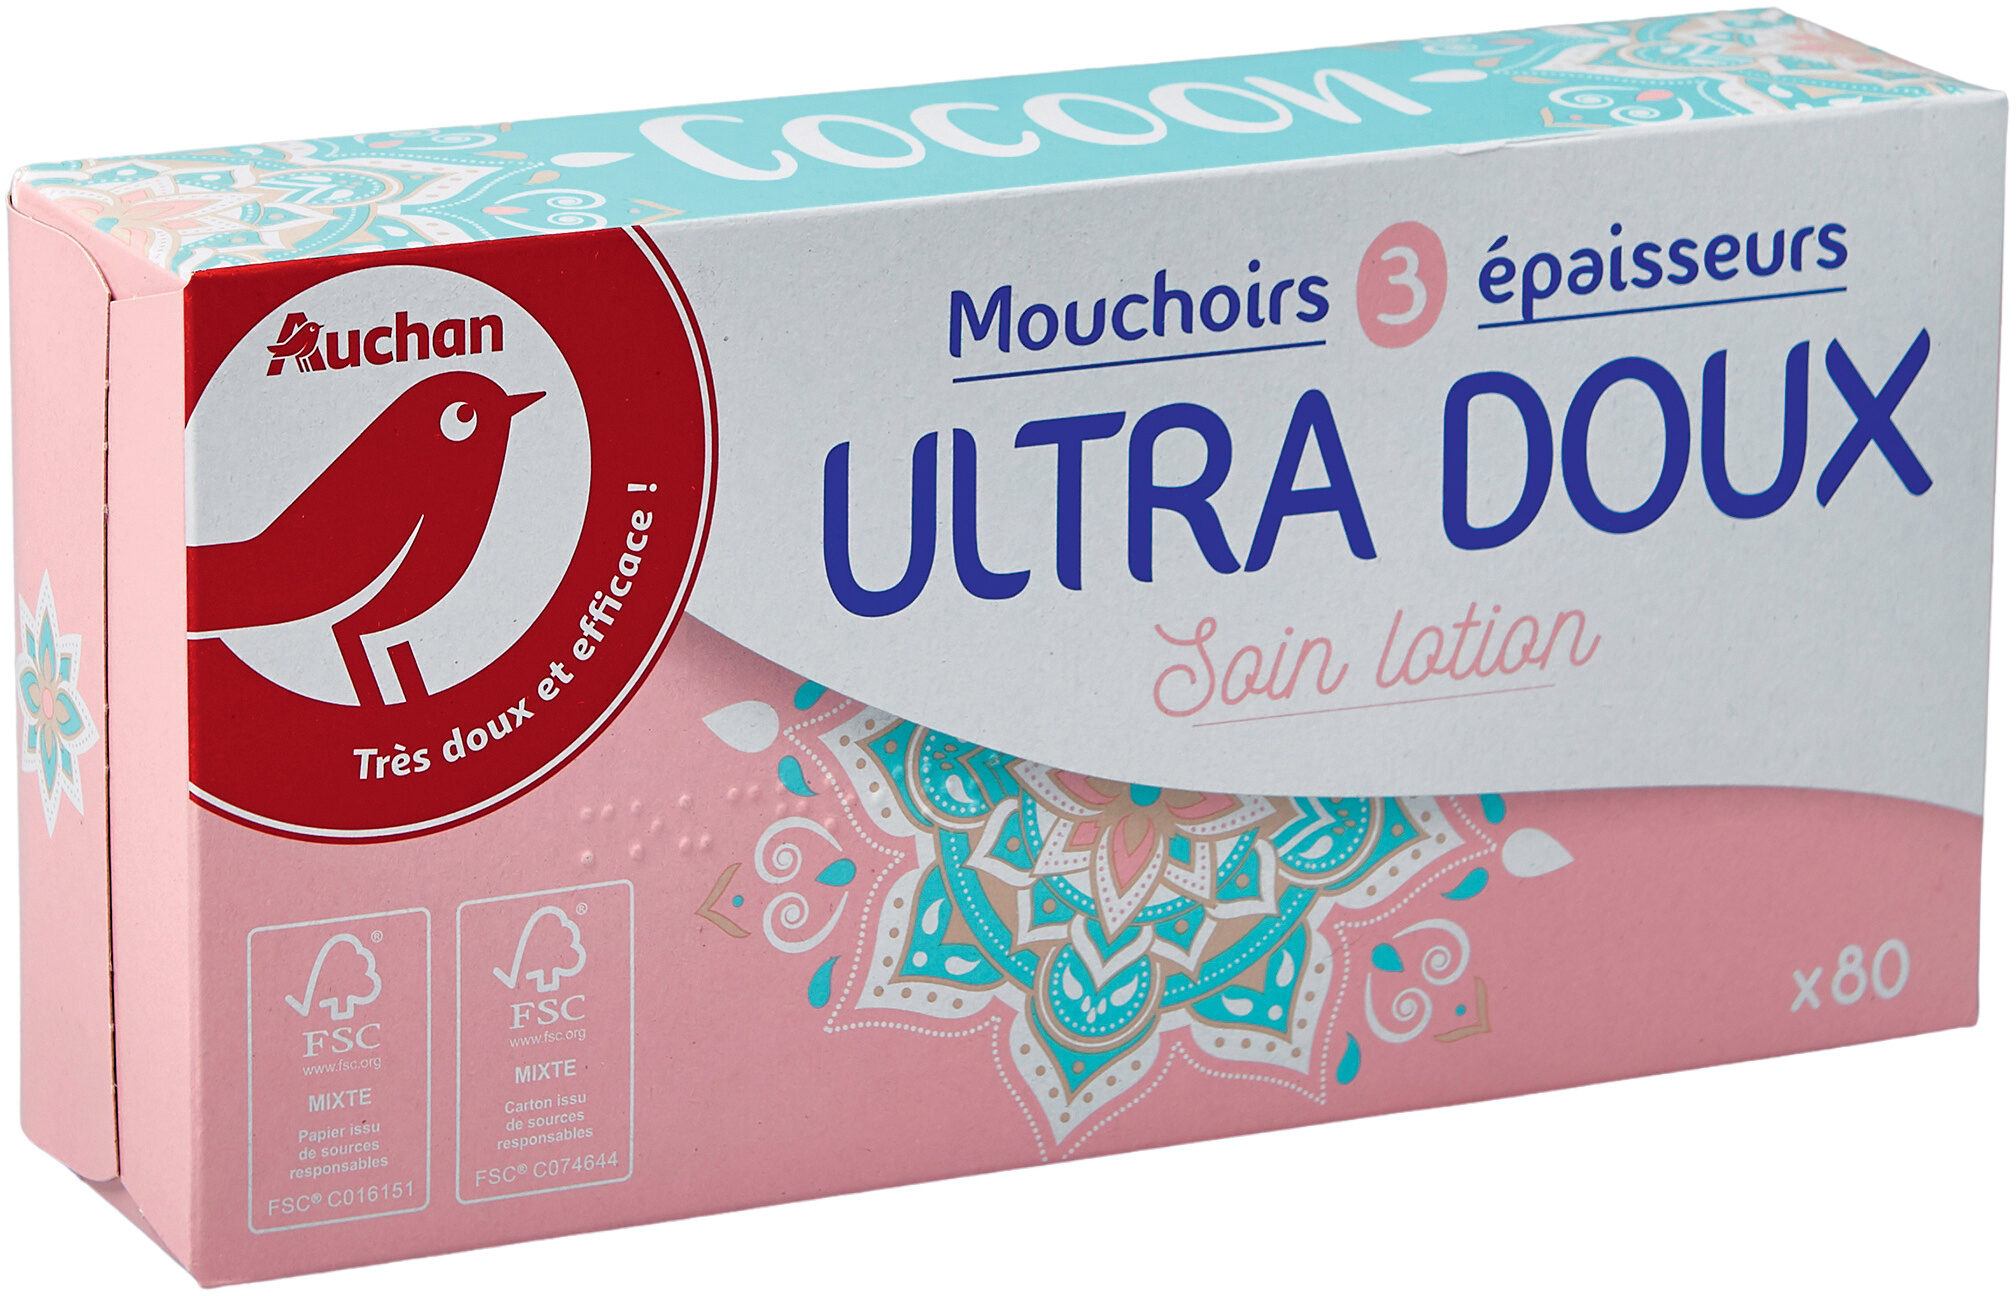 Auchan mouchoirs lotion boite x80 ultra doux - Produit - fr